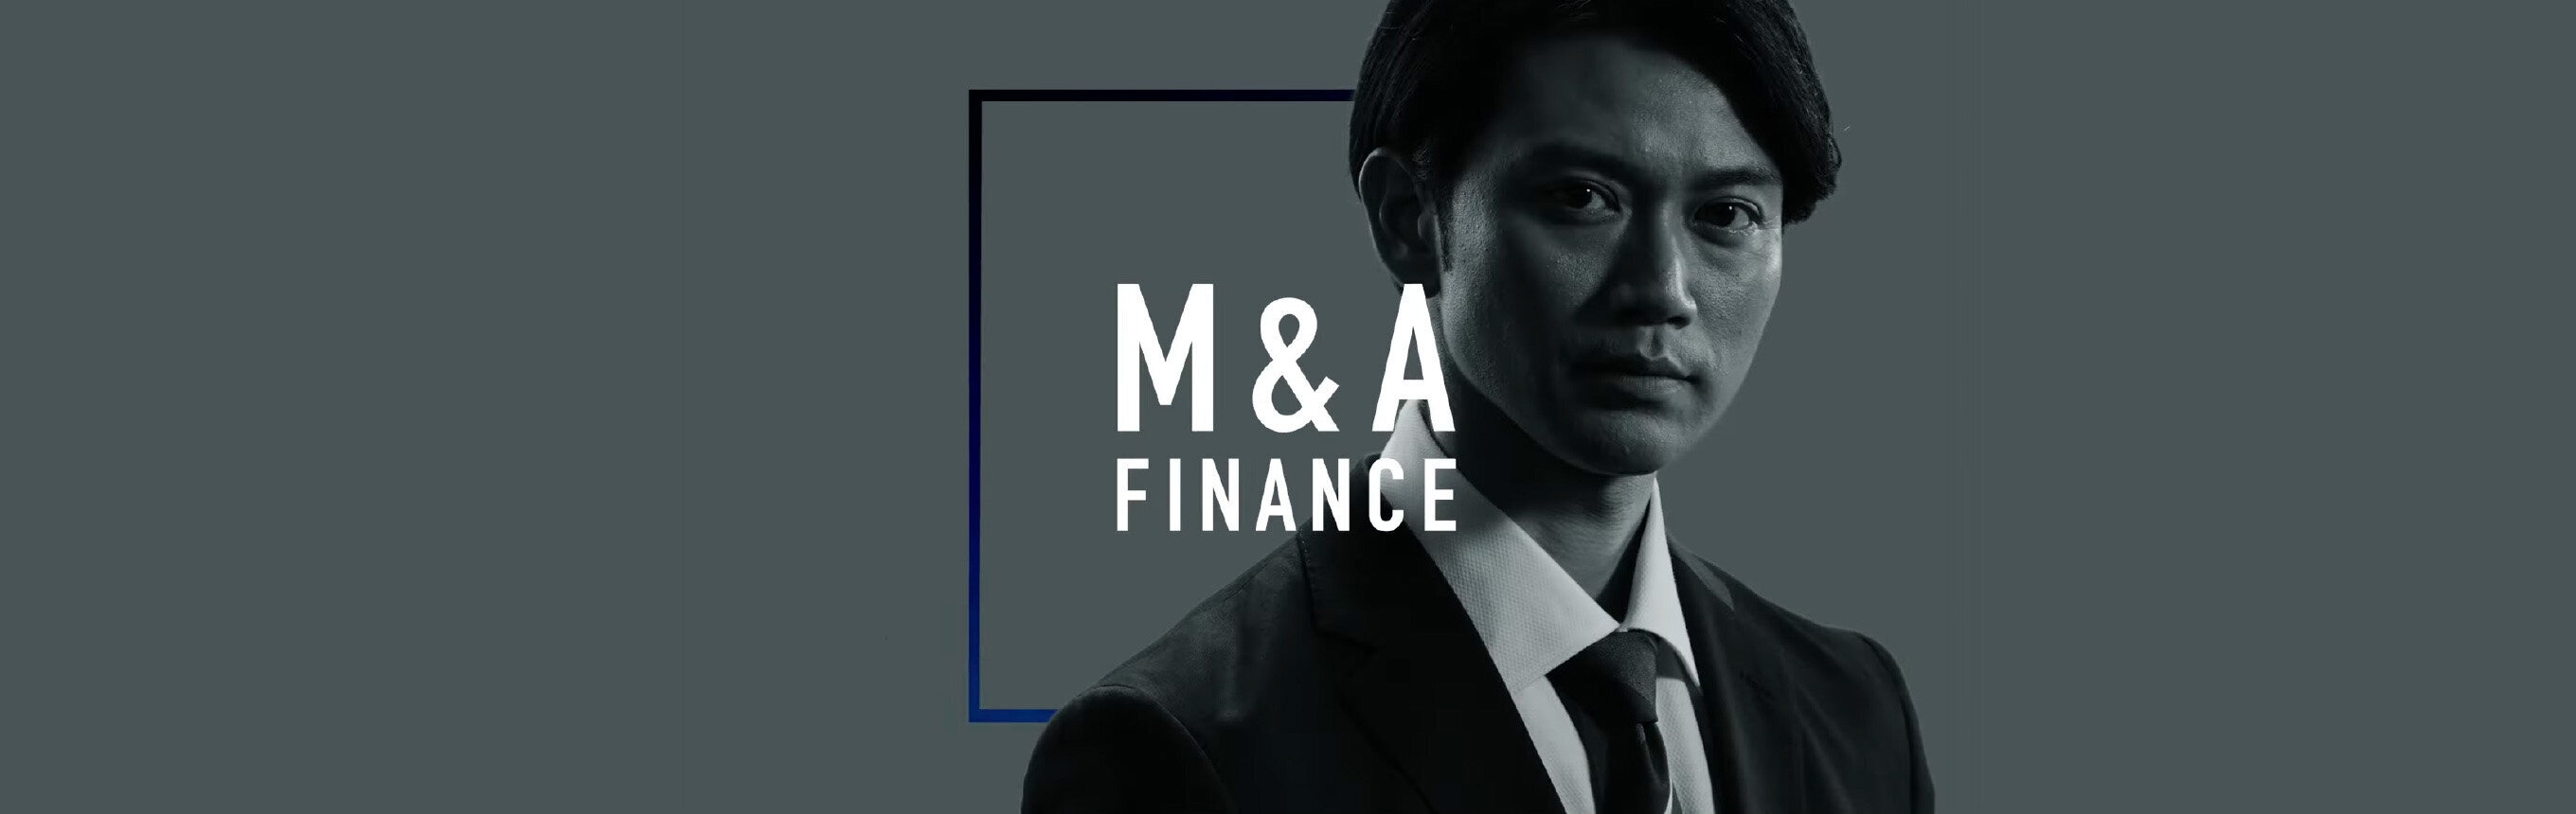 M&A Finance